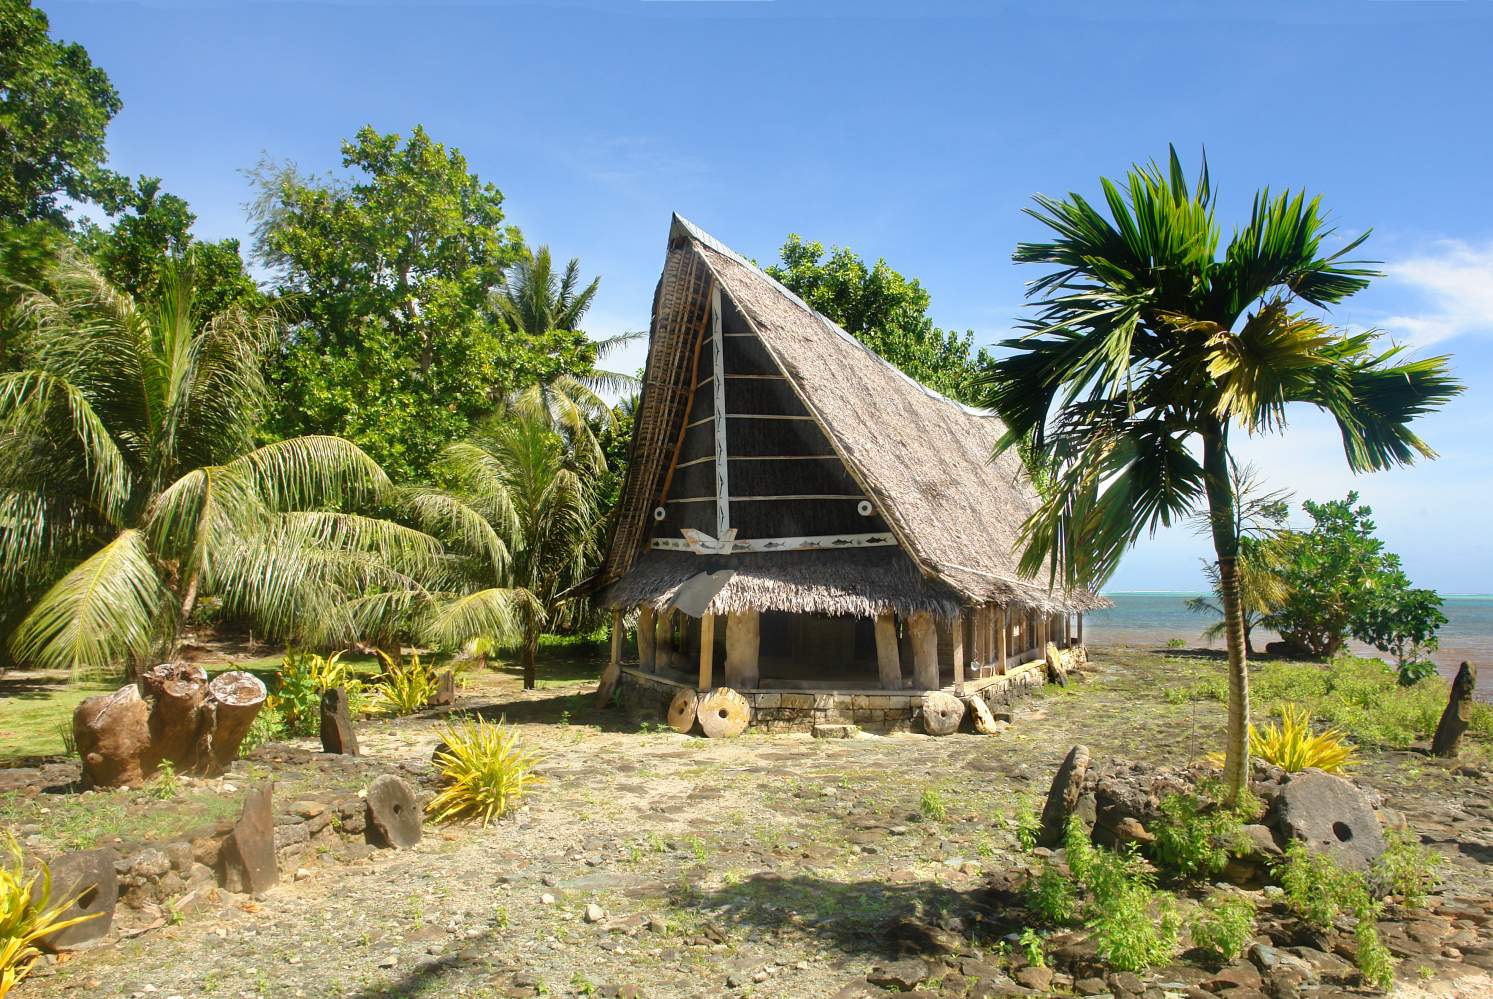 Casa de întâlnire a bărbaților Ngariy, cunoscută ca faluw, pe insula Yap, Micronezia